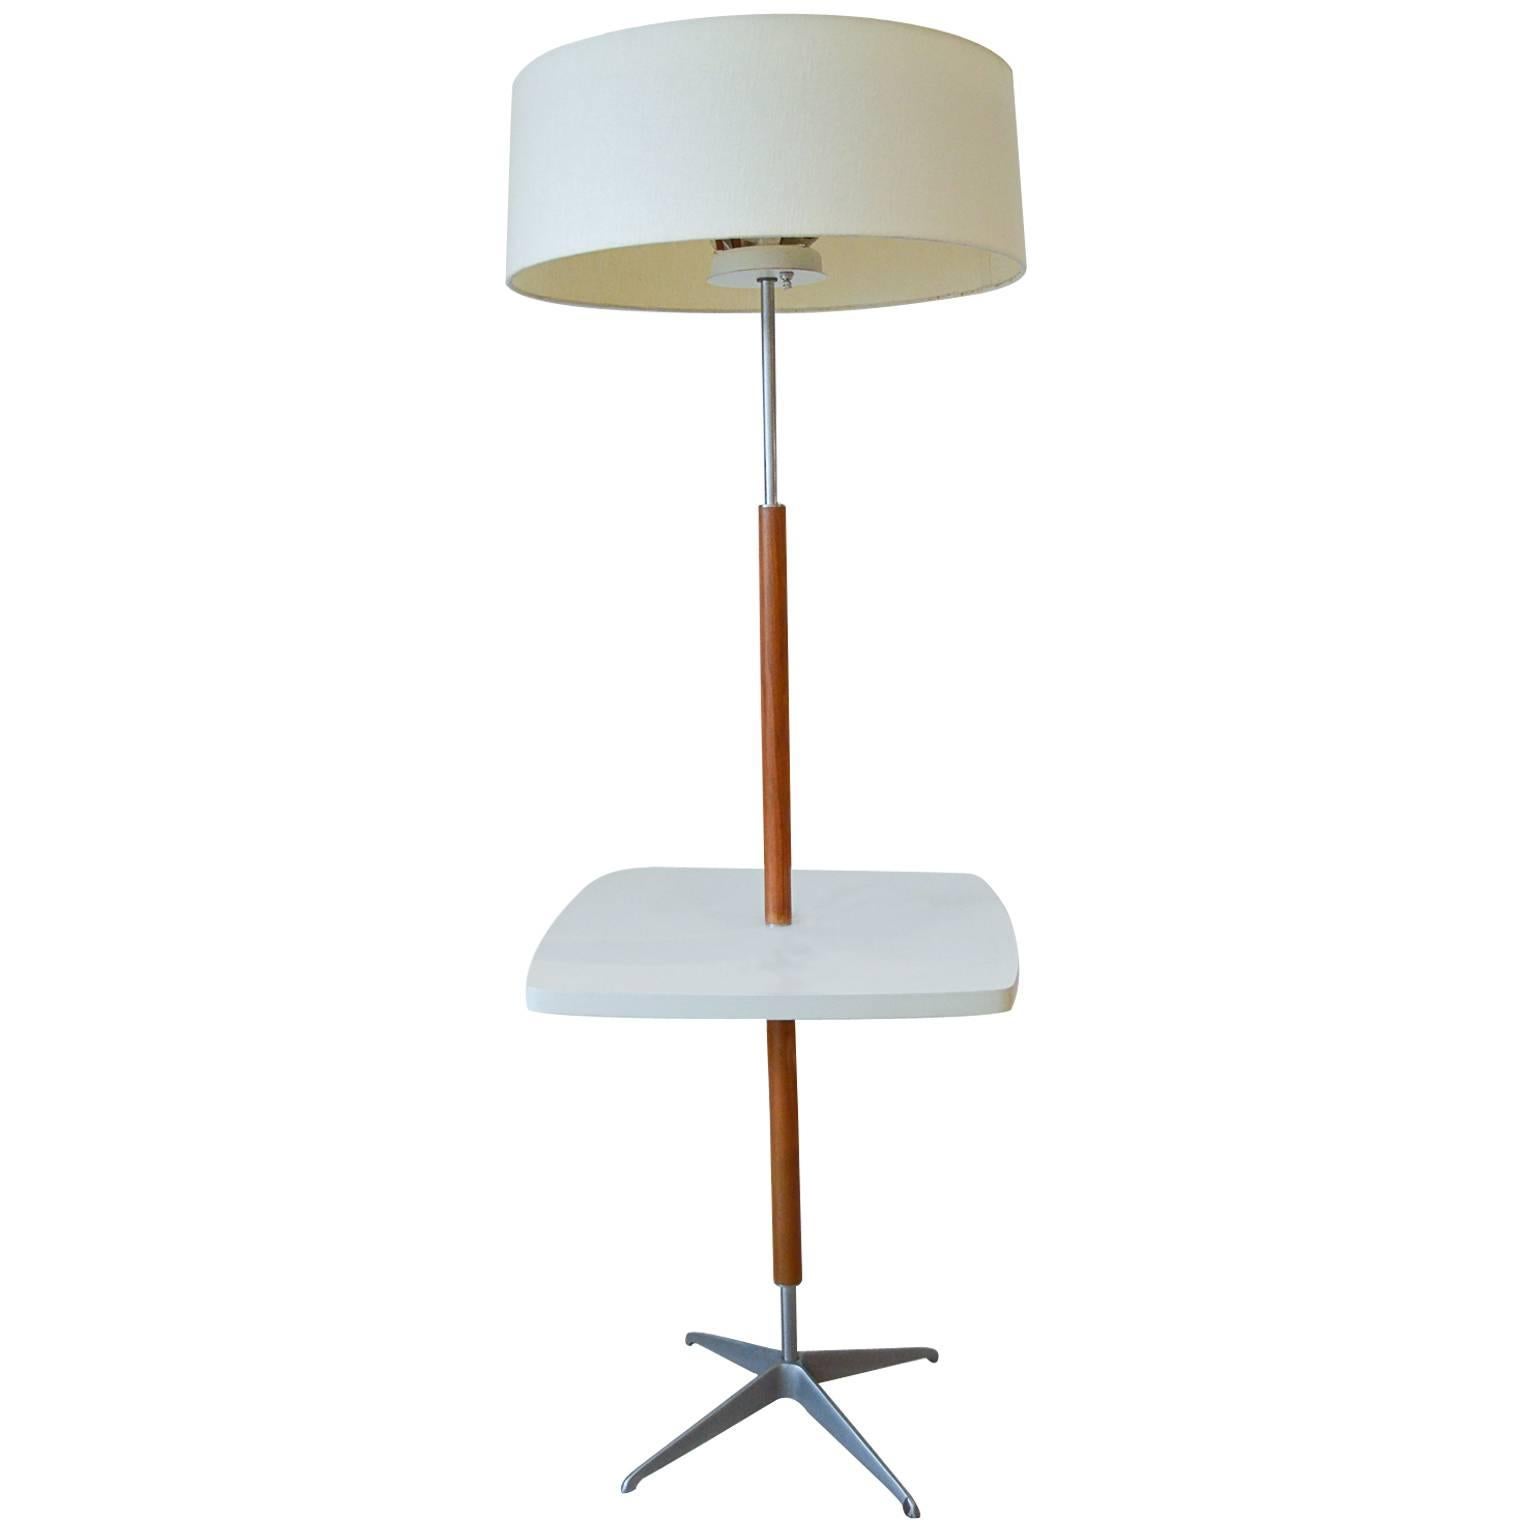 Gerald Thurston for Lightolier Chrome and Walnut Floor Lamp